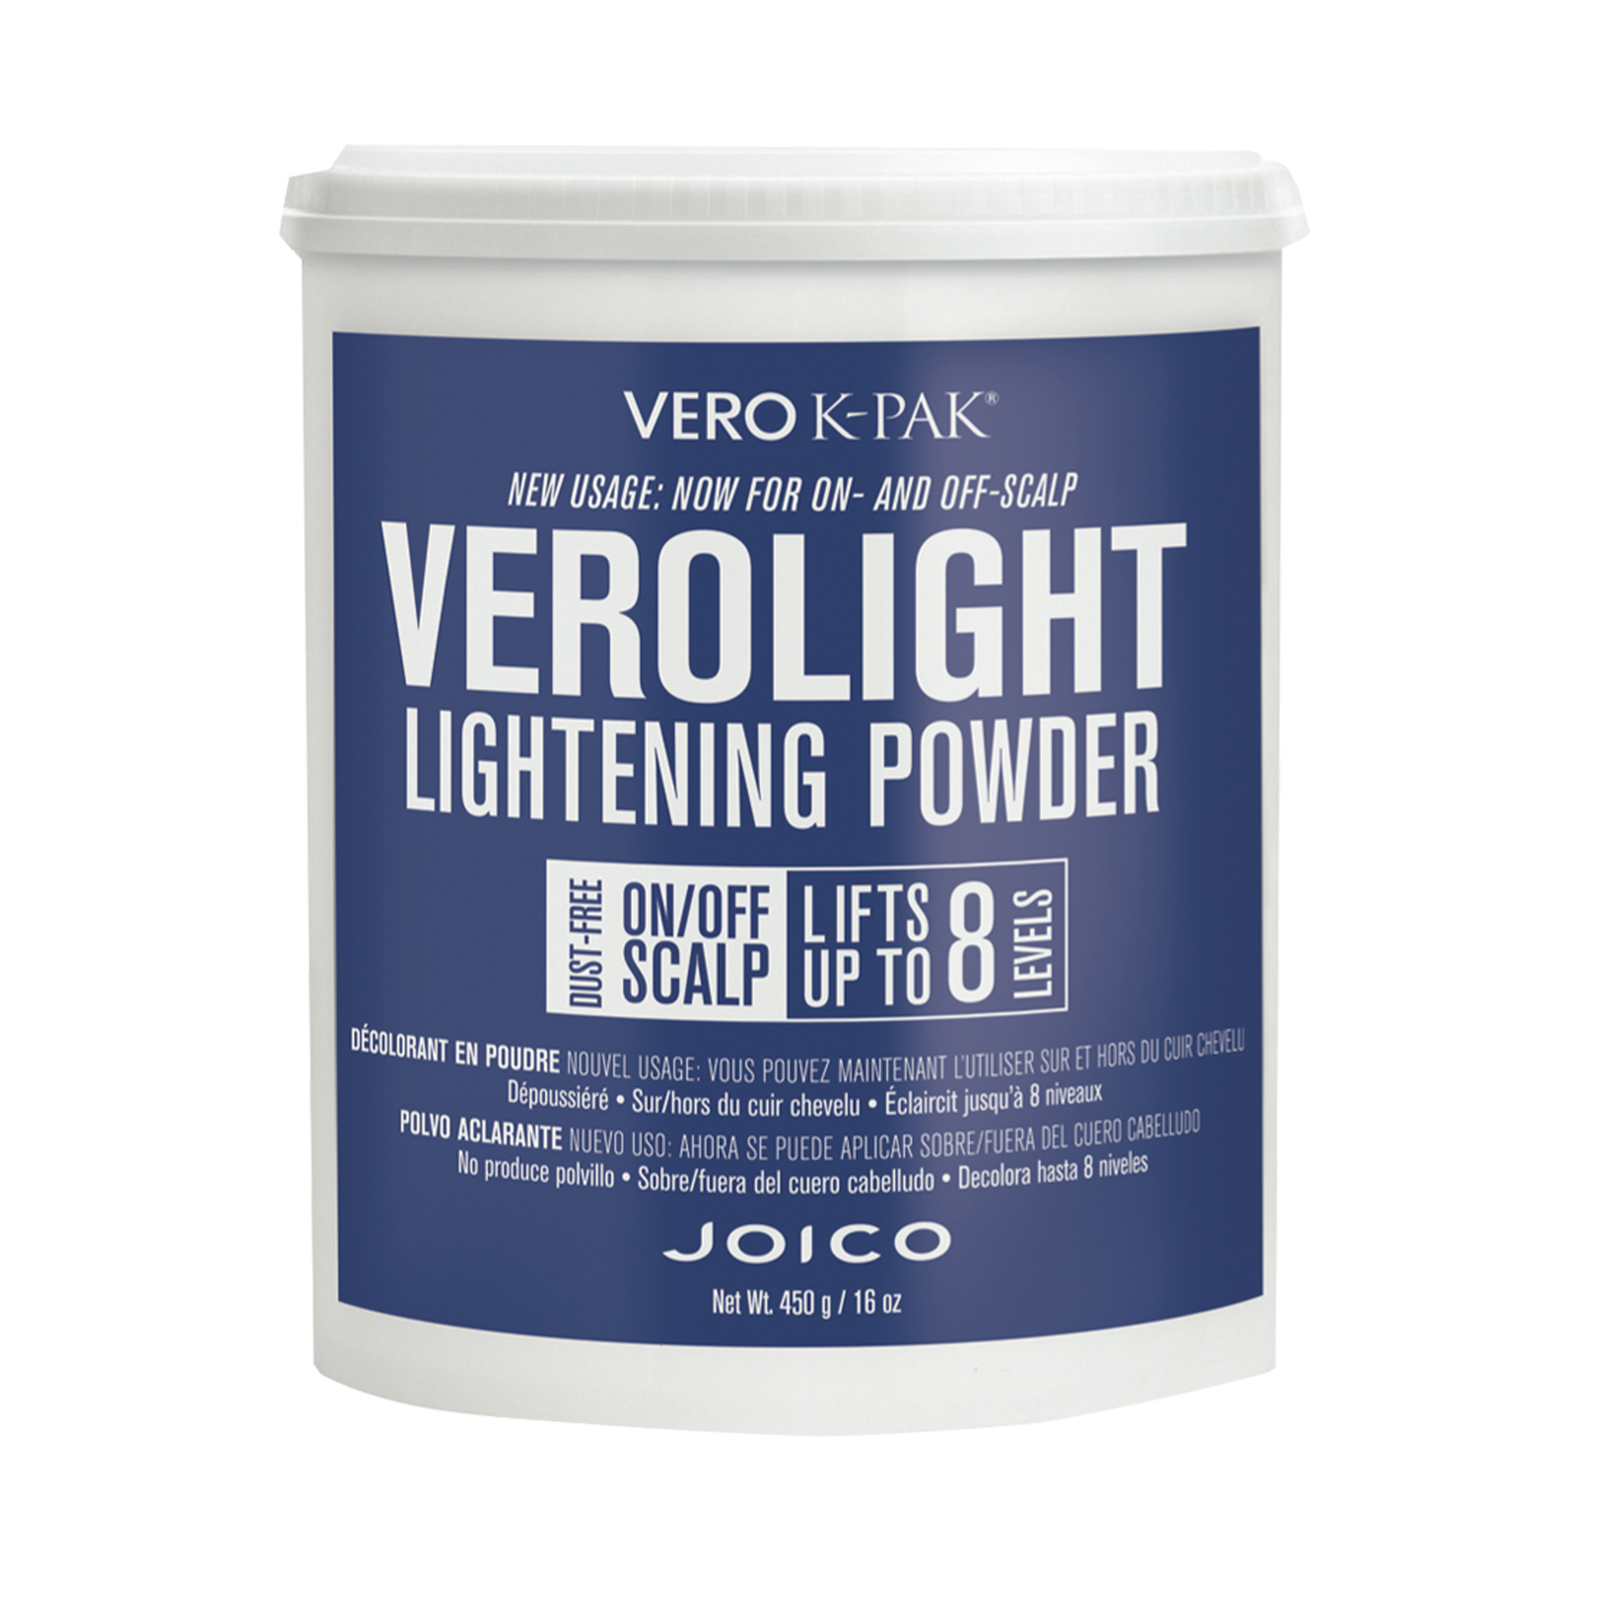 Verolight Lightening Powder